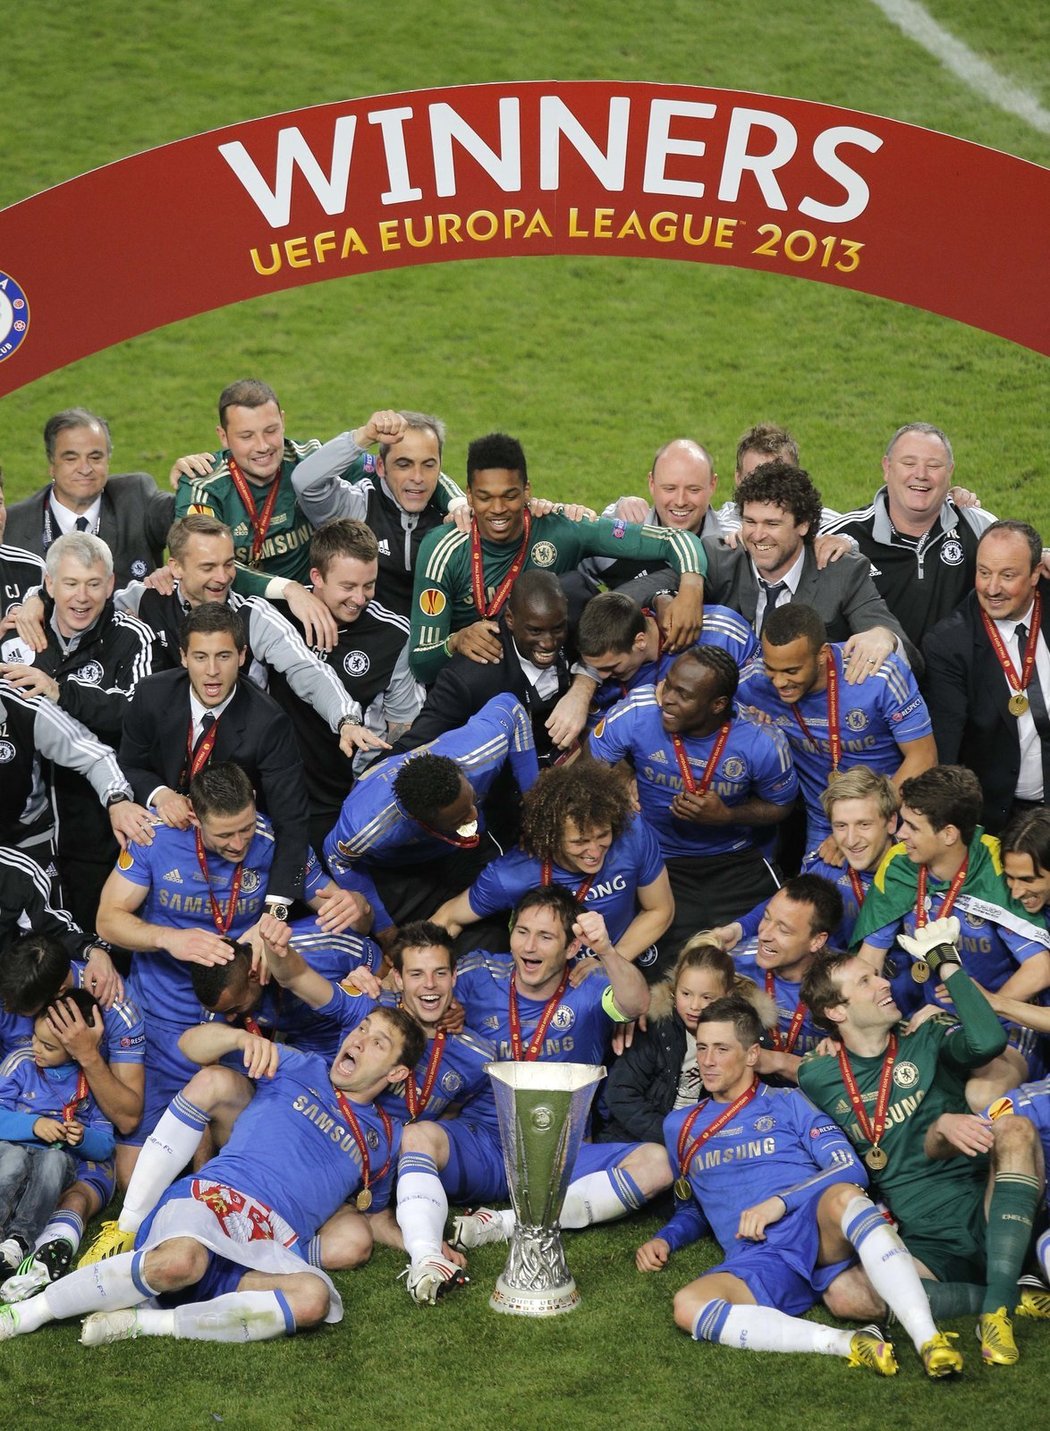 Fotbalisté Chelsea se na konci sezony nakonec dočkali trofeje. Vyhráli Evropskou ligu, ve finále zdolali Benfiku 2:1